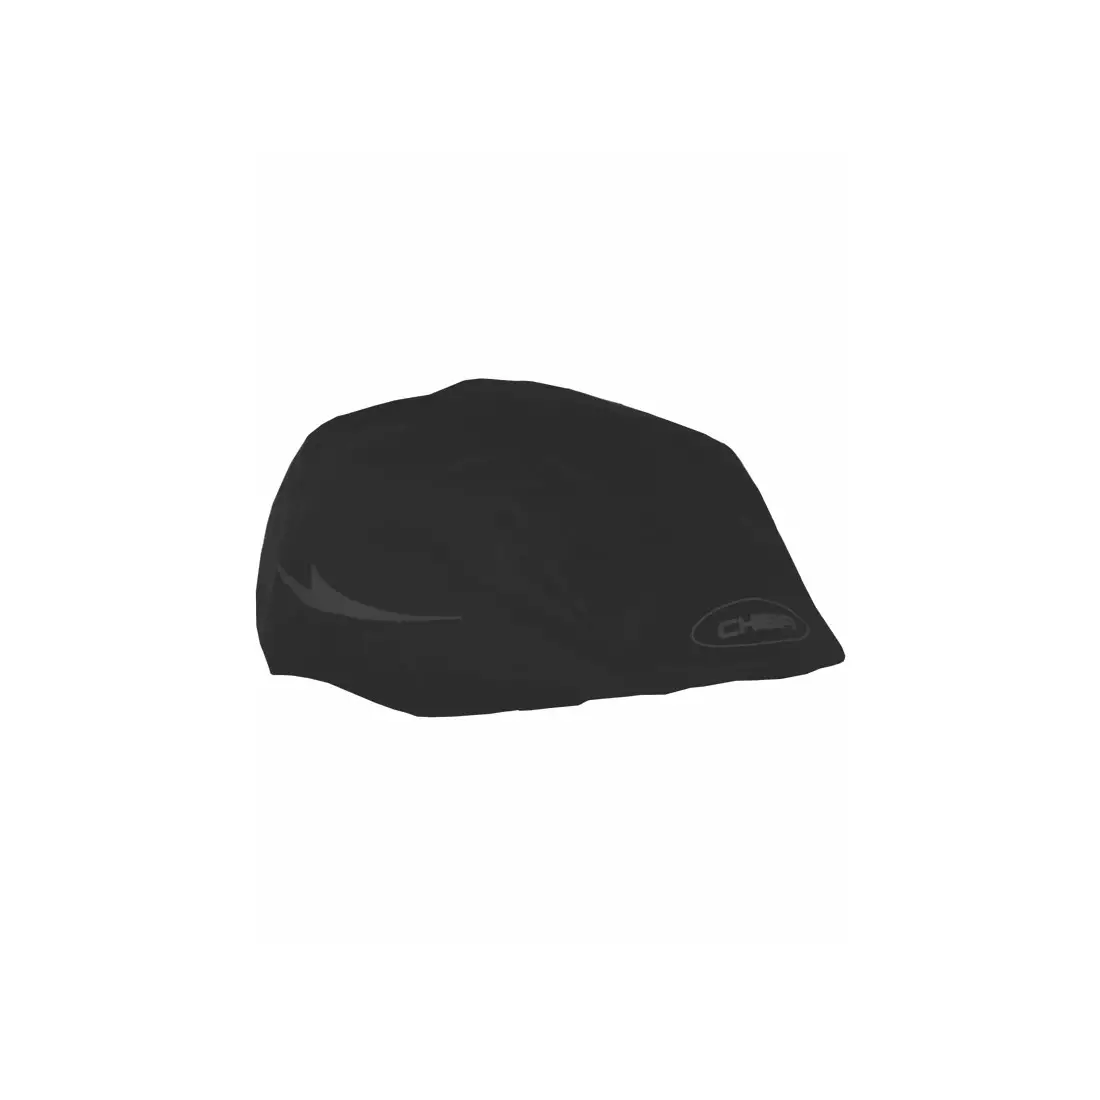 CHIBA SS19 RAINCOVER PRO 31423 pláštěnka na helmu, Černá one size